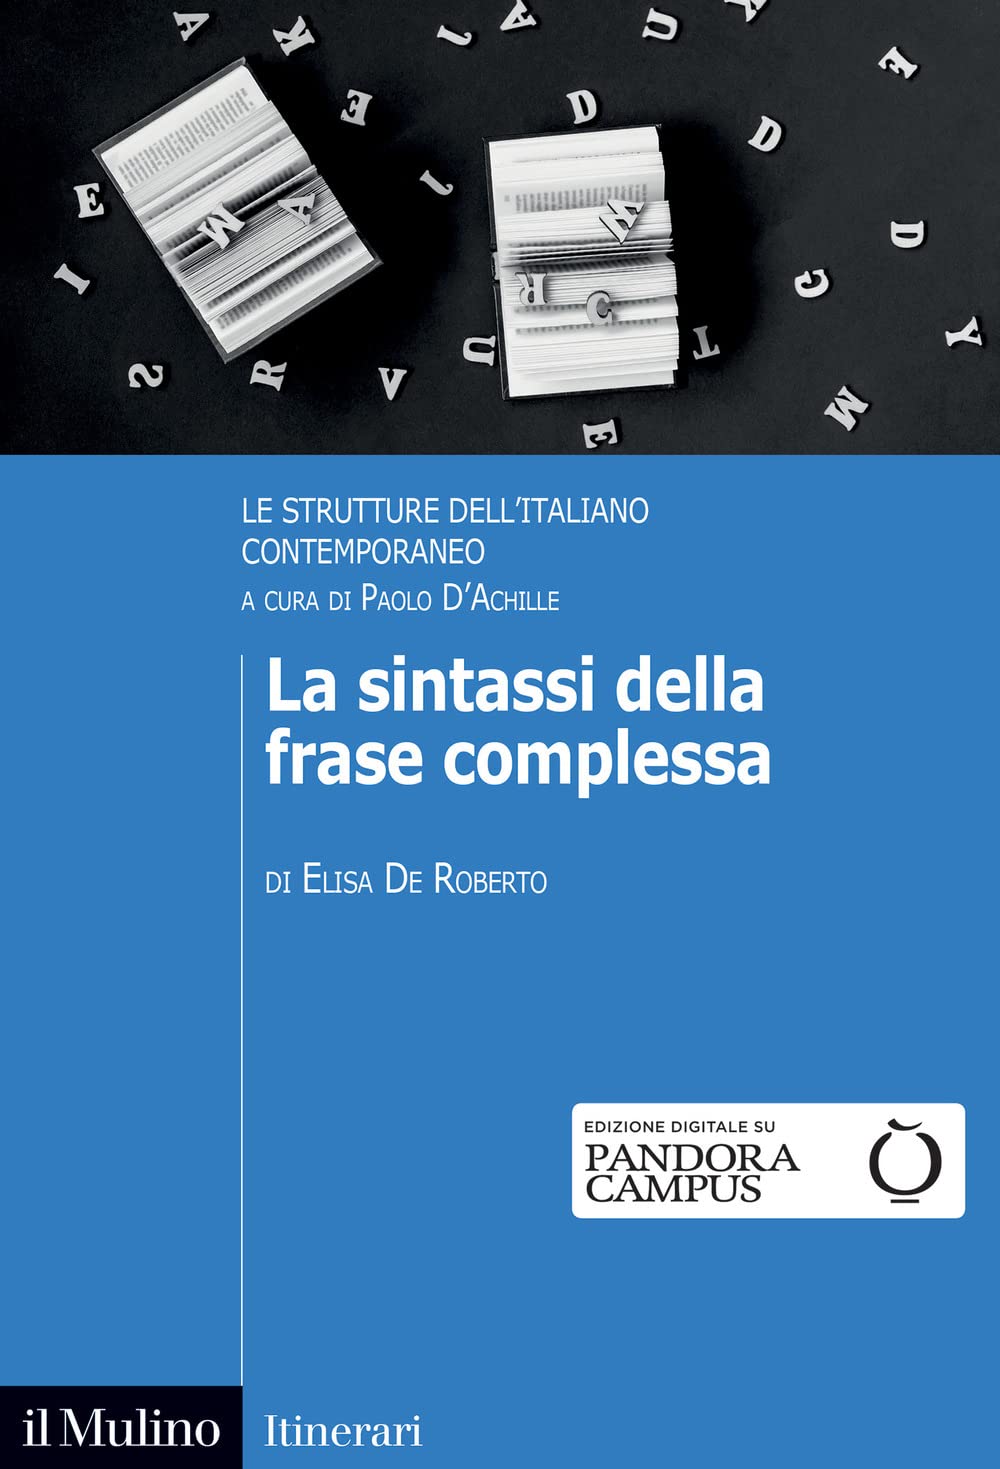 Libri De Roberto Elisa - La Sintassi Della Frase Complessa NUOVO SIGILLATO, EDIZIONE DEL 17/03/2023 SUBITO DISPONIBILE